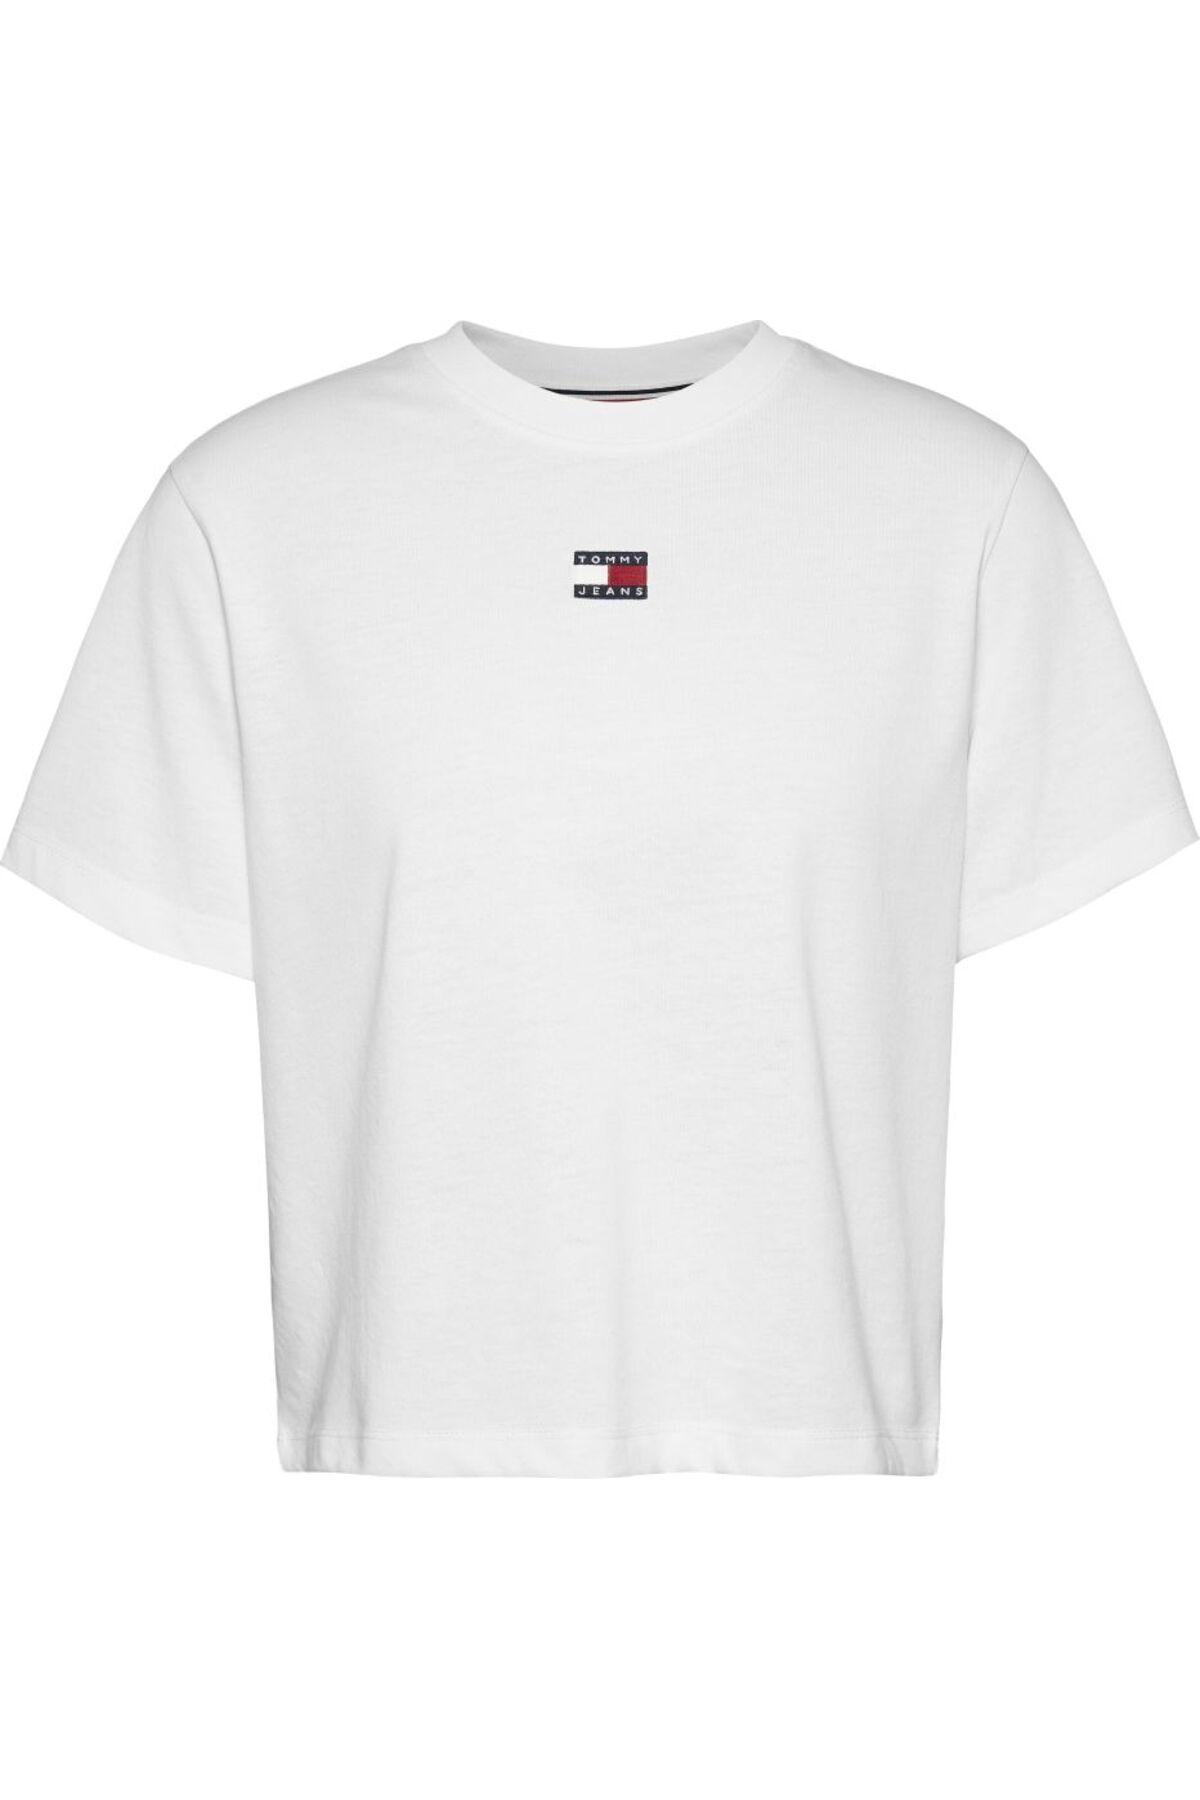 Tommy Hilfiger Tommy Jeans Kadin Boxy Fi?t Badge T-shirt